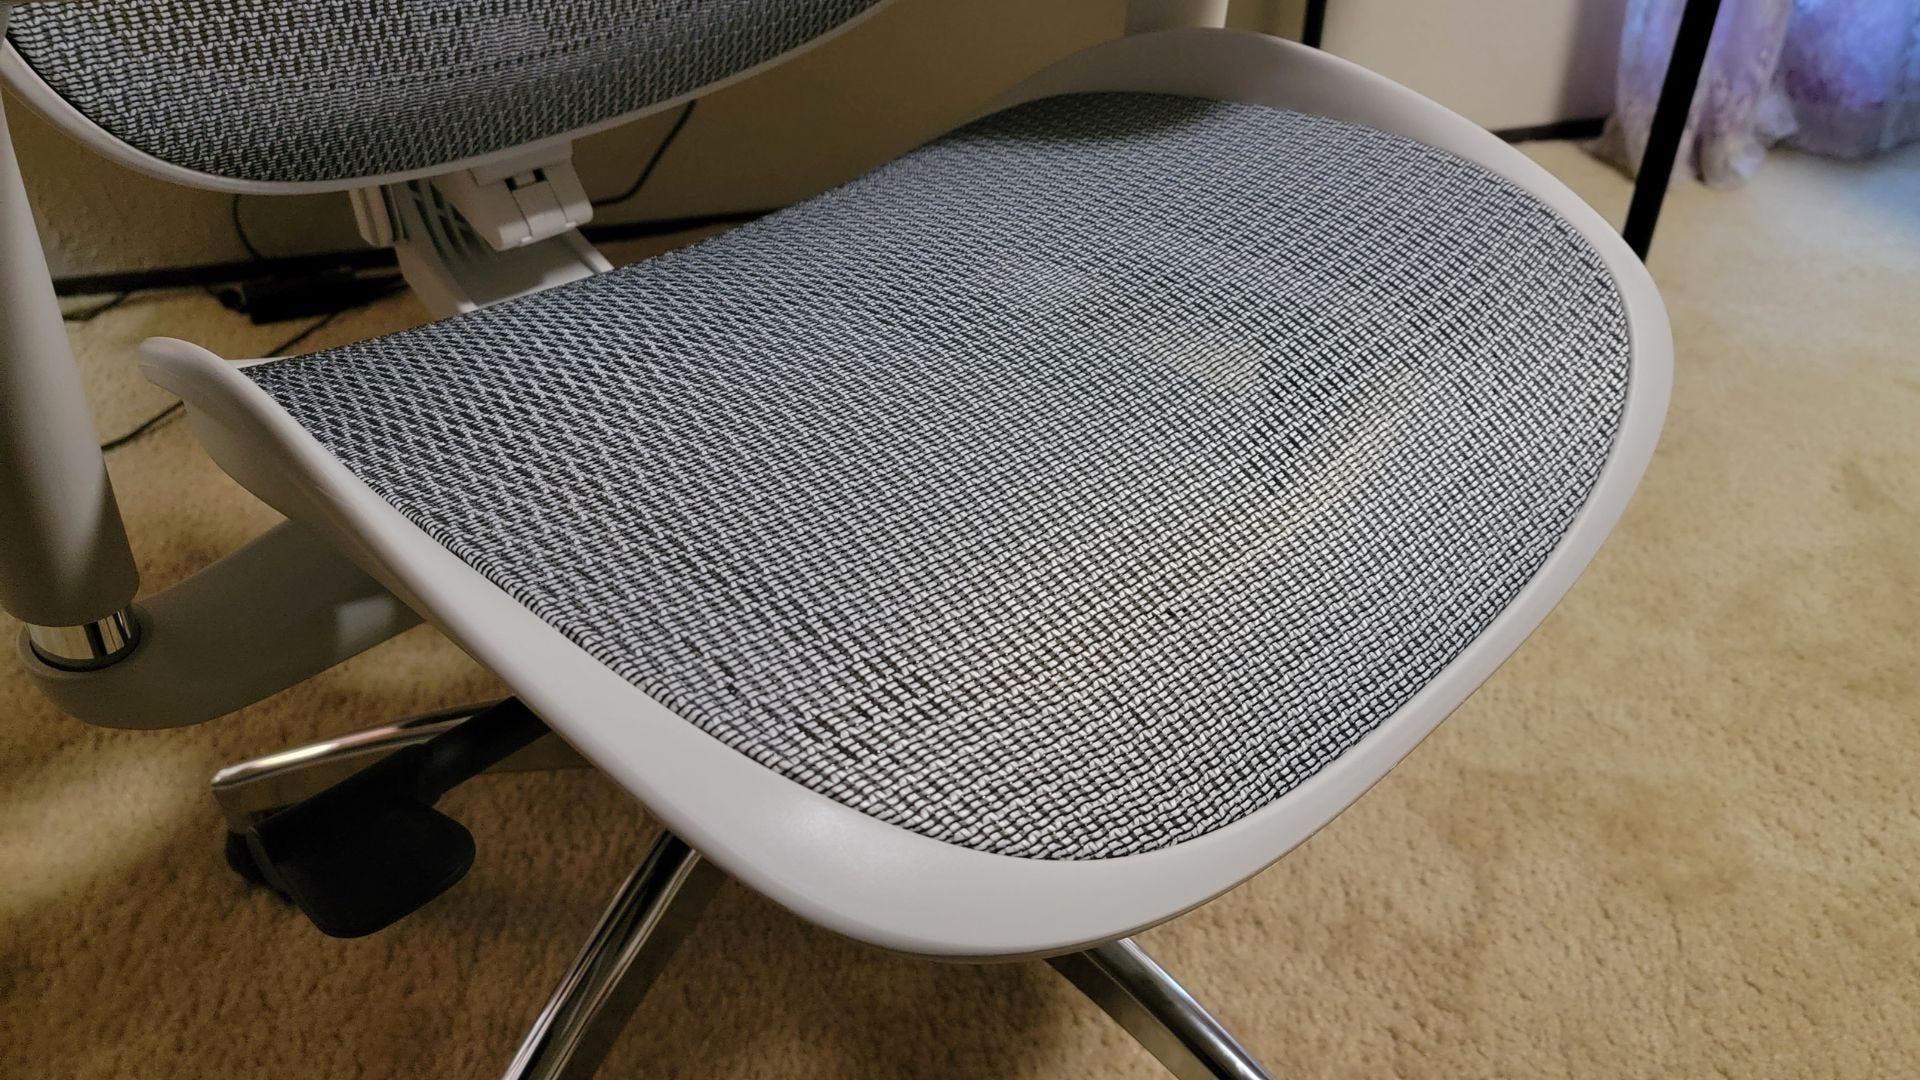 SIHOO Doro-C300 Ergonomic Chair mesh seat